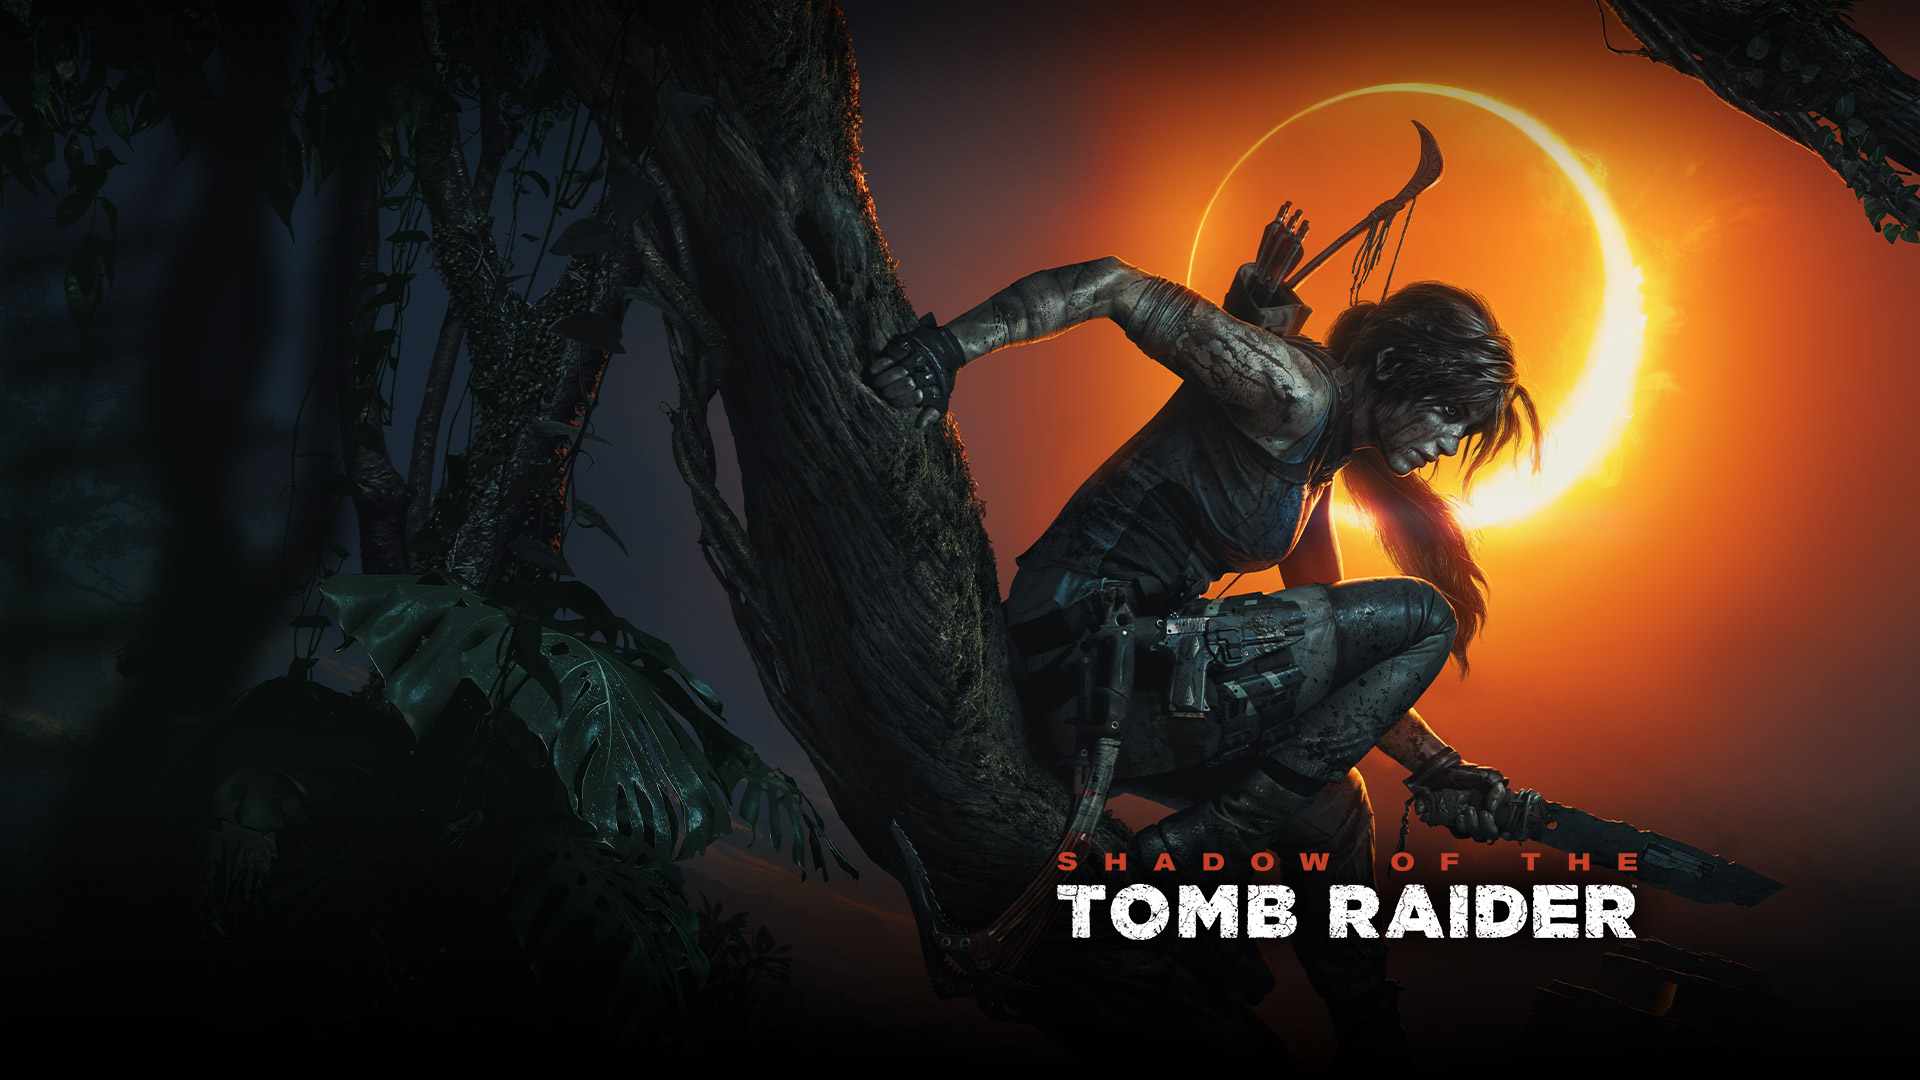 Shadow of the Tomb Raider, Lara Croft sitzt auf einem Ast und hält ein Messer in der Hand, Sonnenfinsternis im Hintergrund